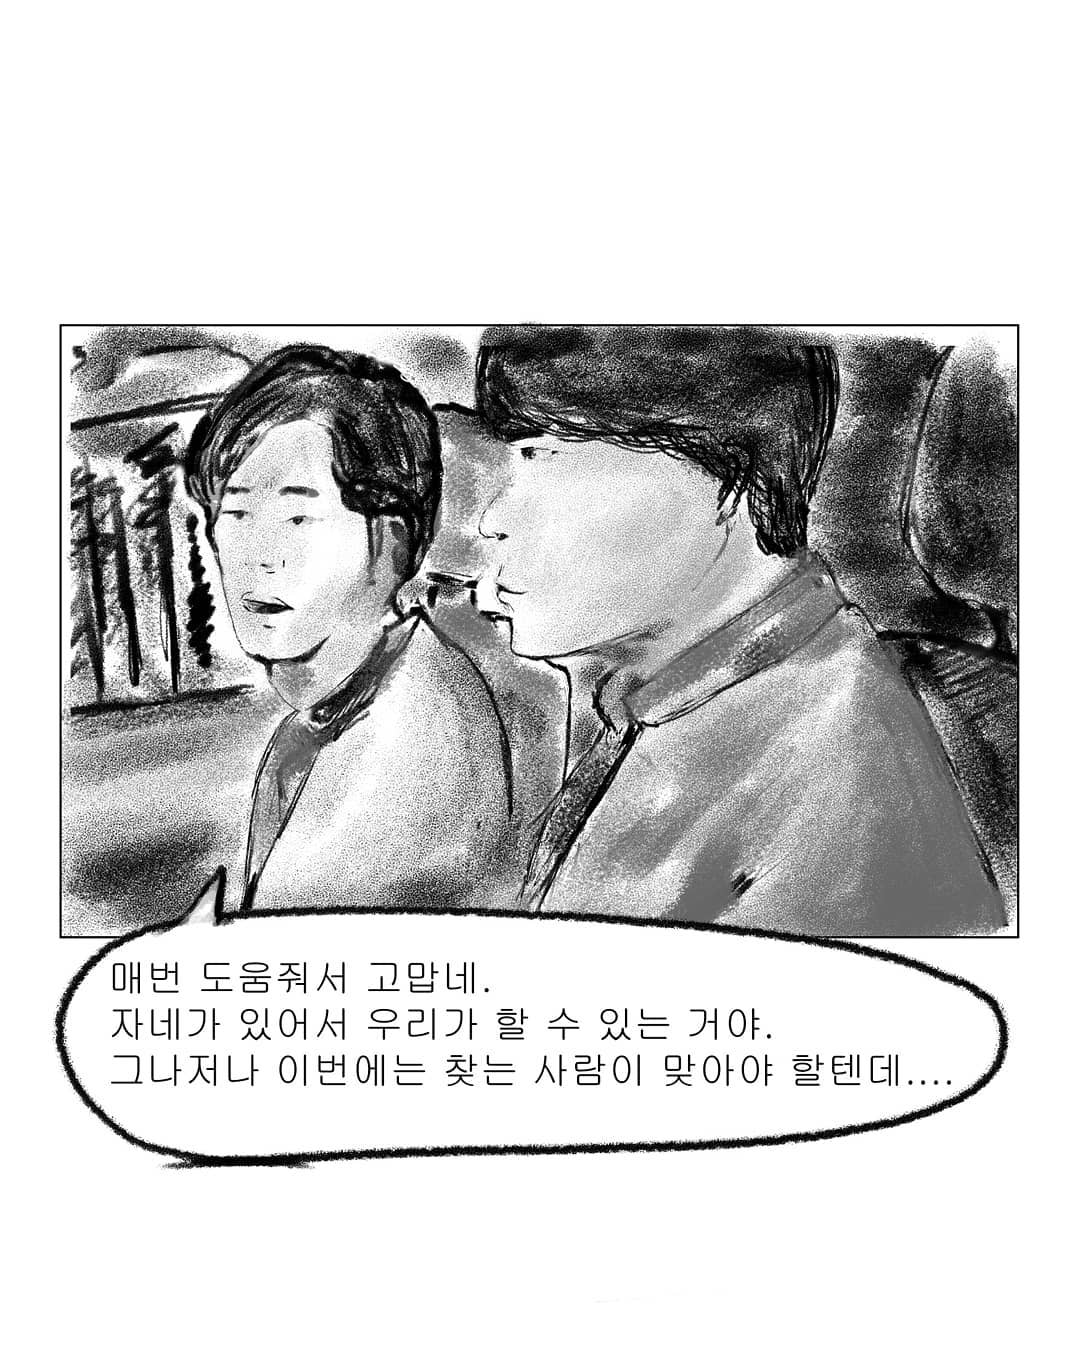 2019년도 인스타툰 '안까이' 장면 03